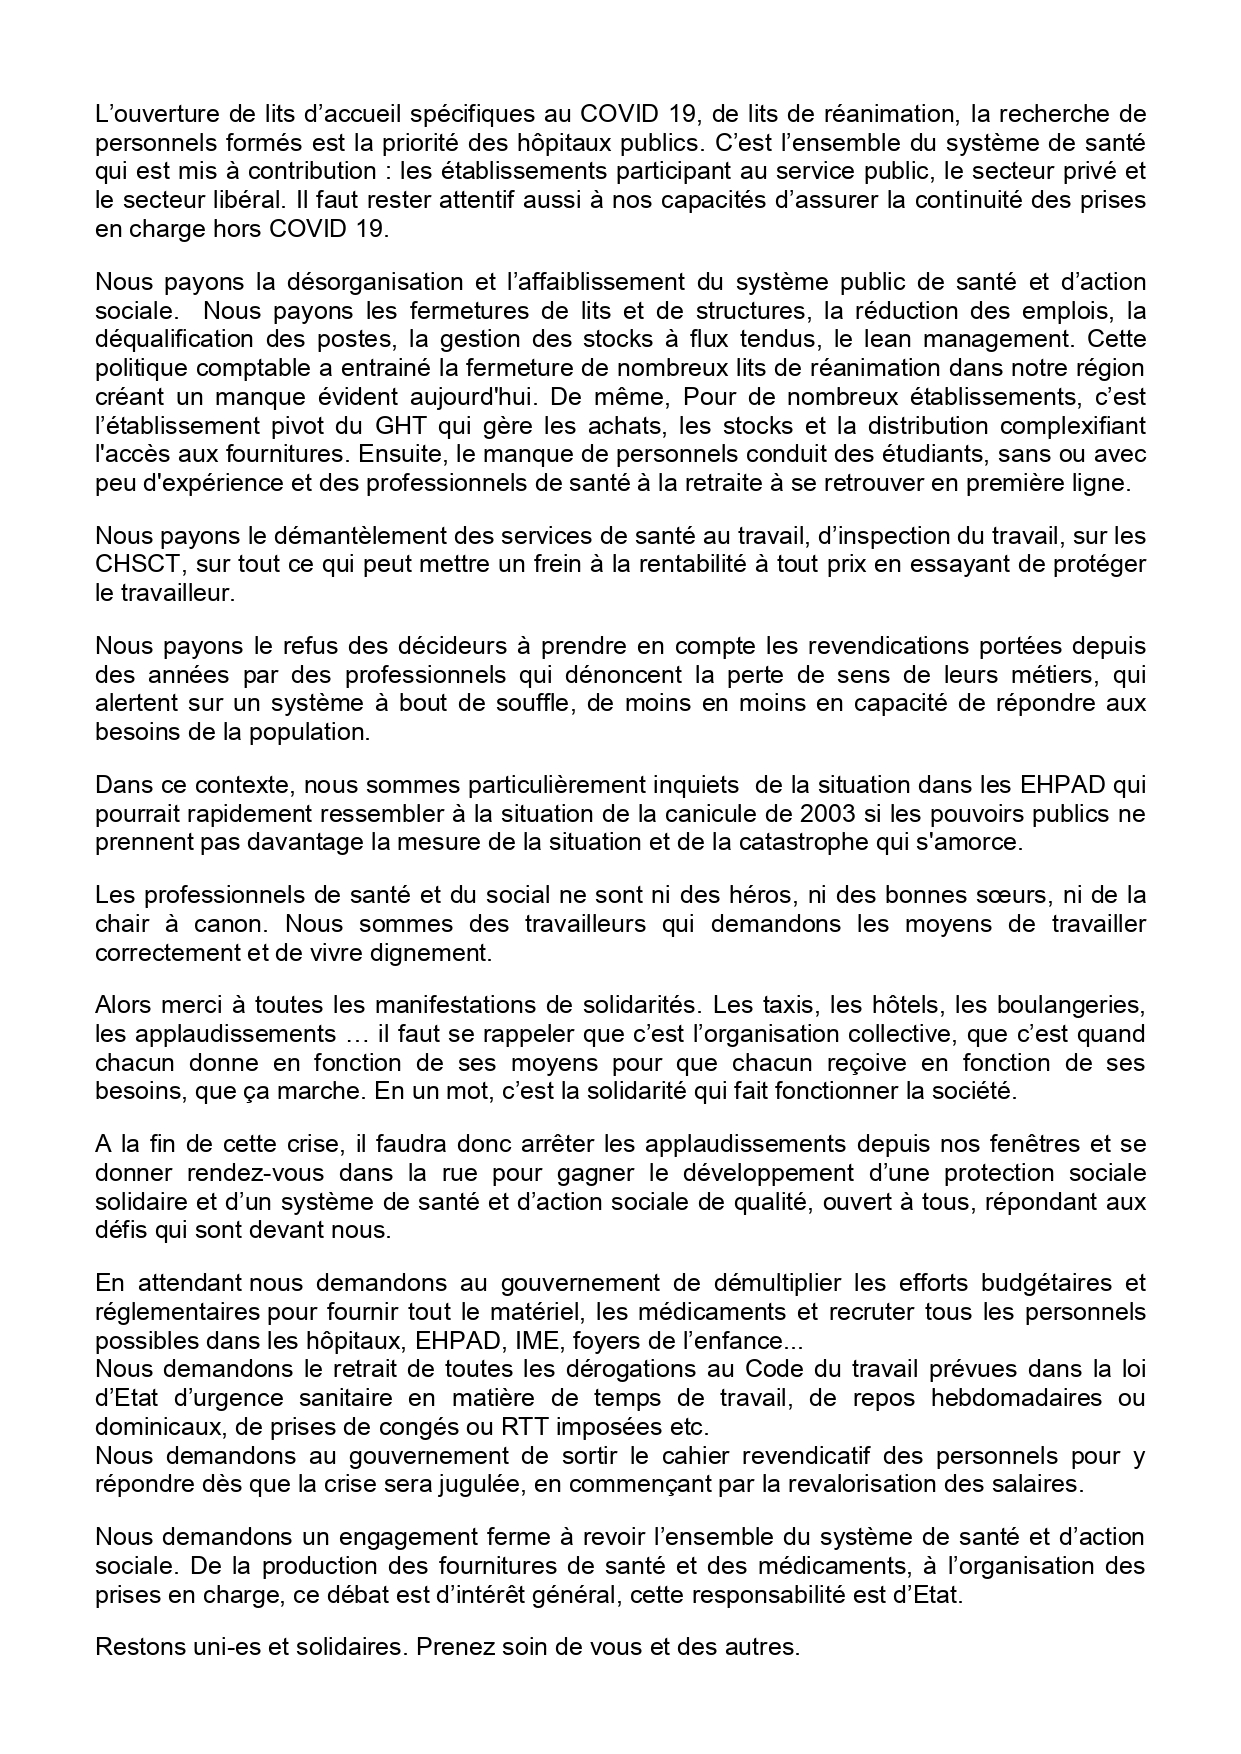 Covid-19 Communiqué Coordination Régionale PACA du 25 mars 2020 (2)